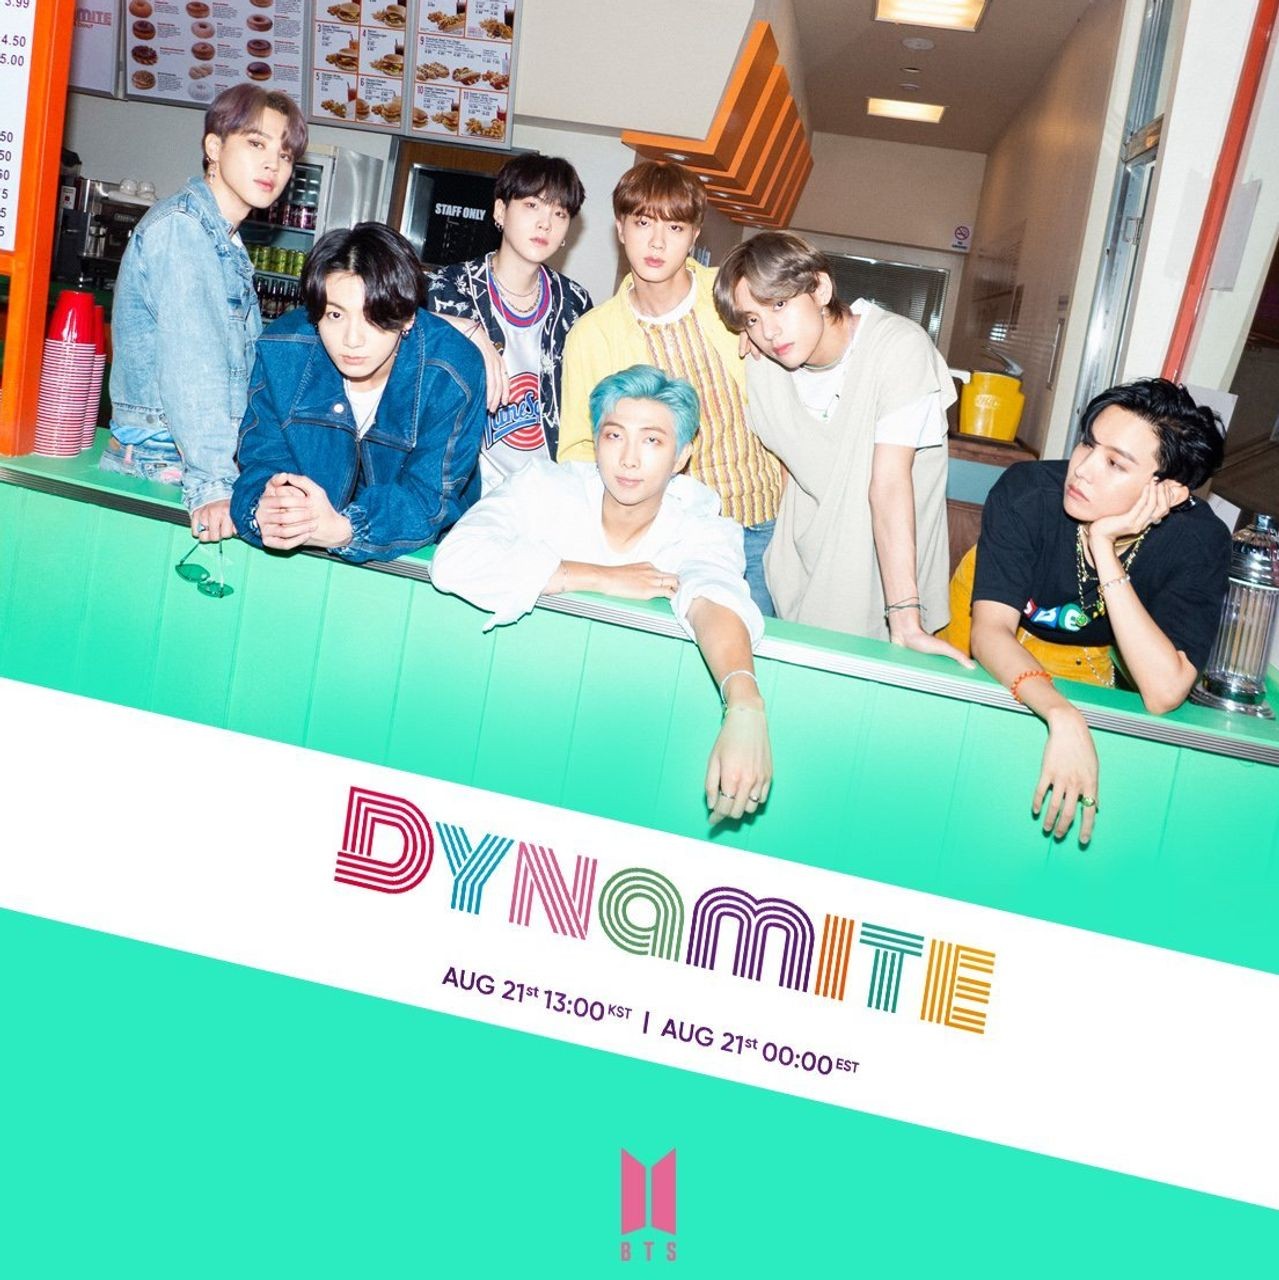 Video âm nhạc  Dynamite của BTS vượt mốc 1,6 tỷ lượt xem trên YouBube